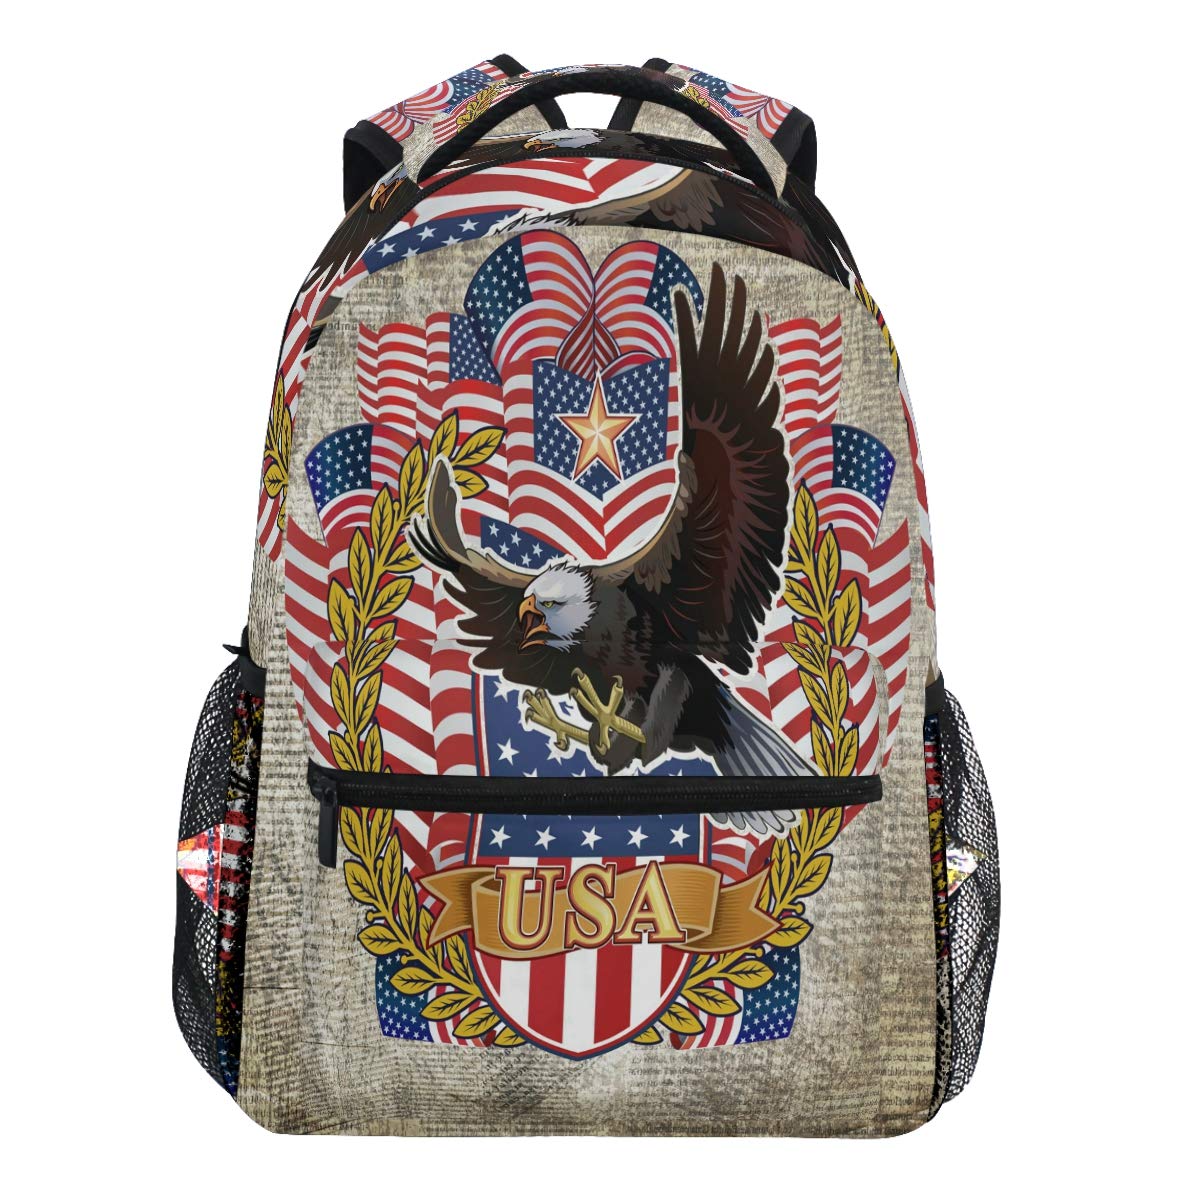 Oarencol American Eagle Vintage USA Flaggen Stars Stripe Rucksack Büchertasche Daypack Reise Schule College Bag